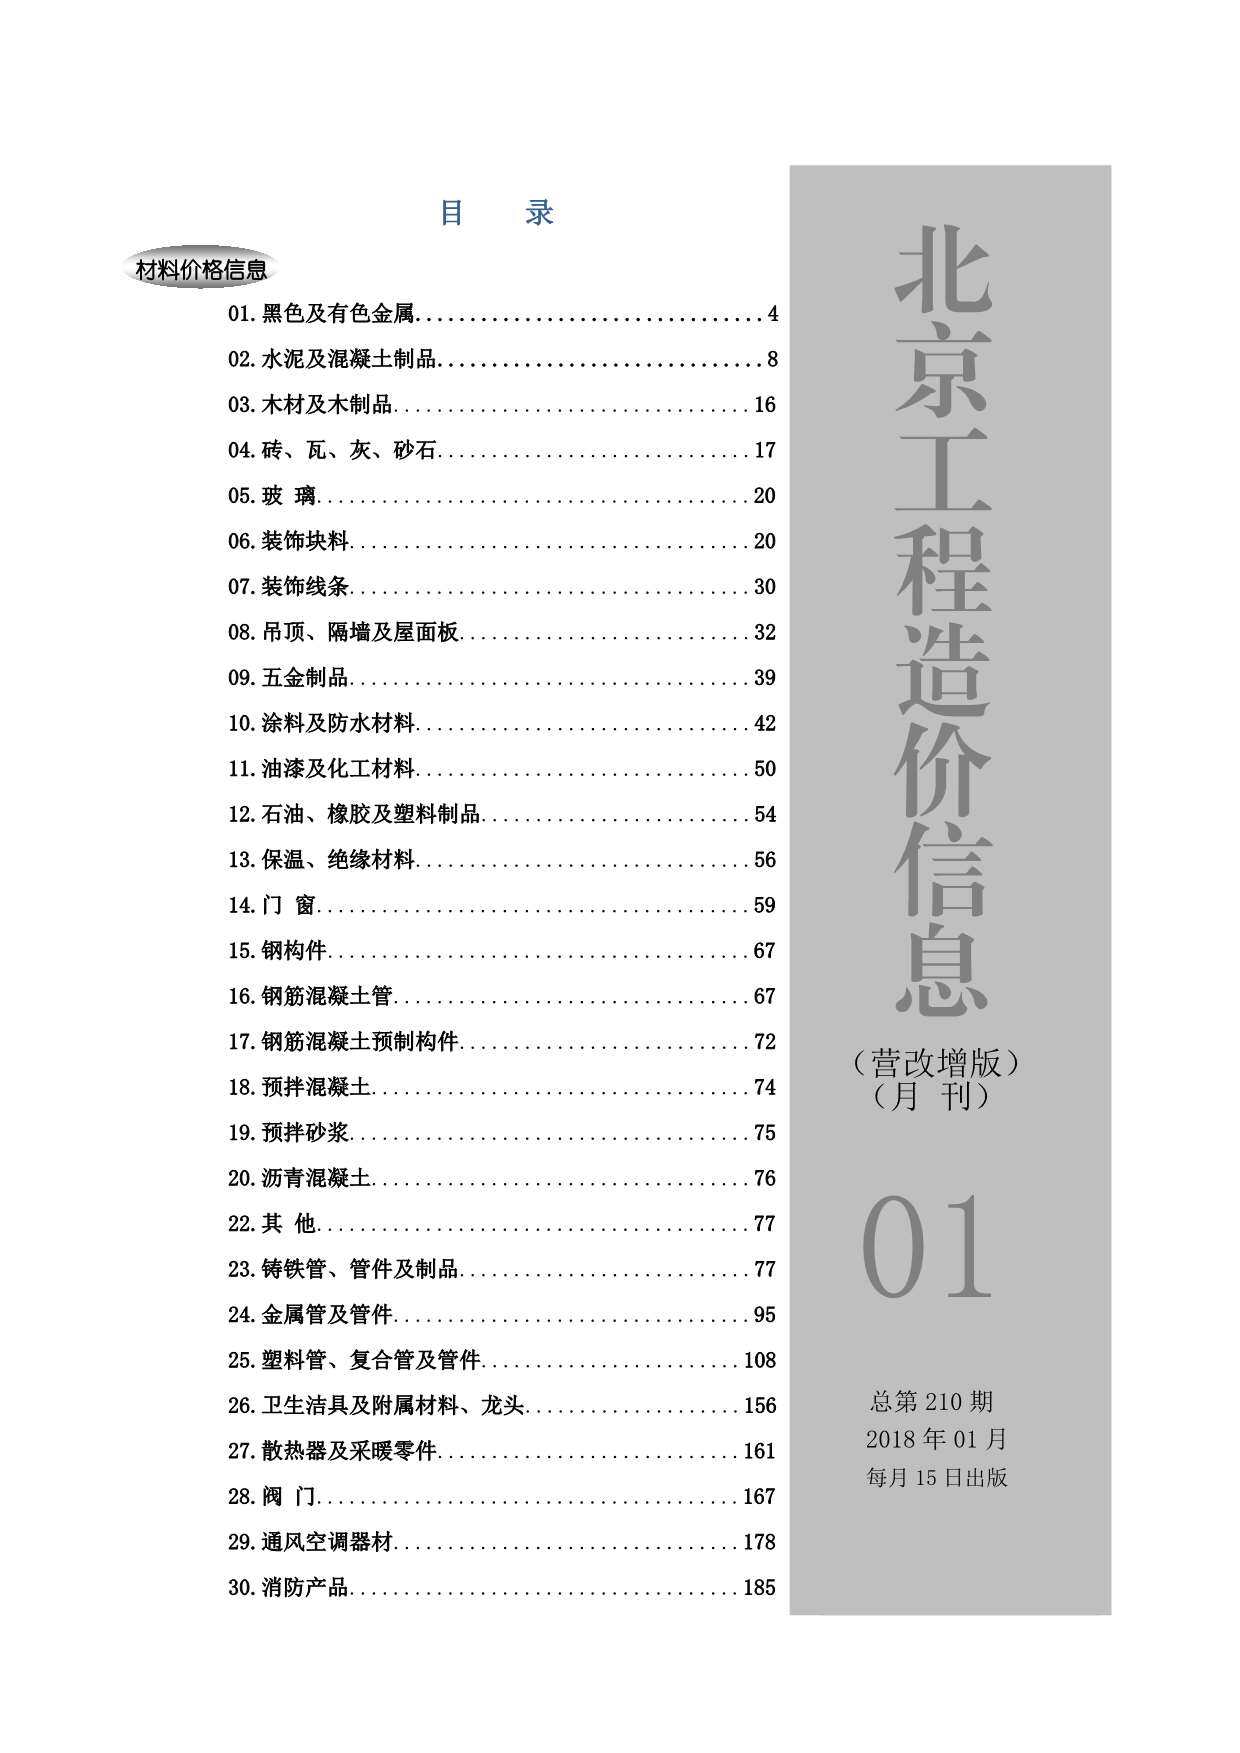 2018年1期北京市营改增版工程造价信息期刊